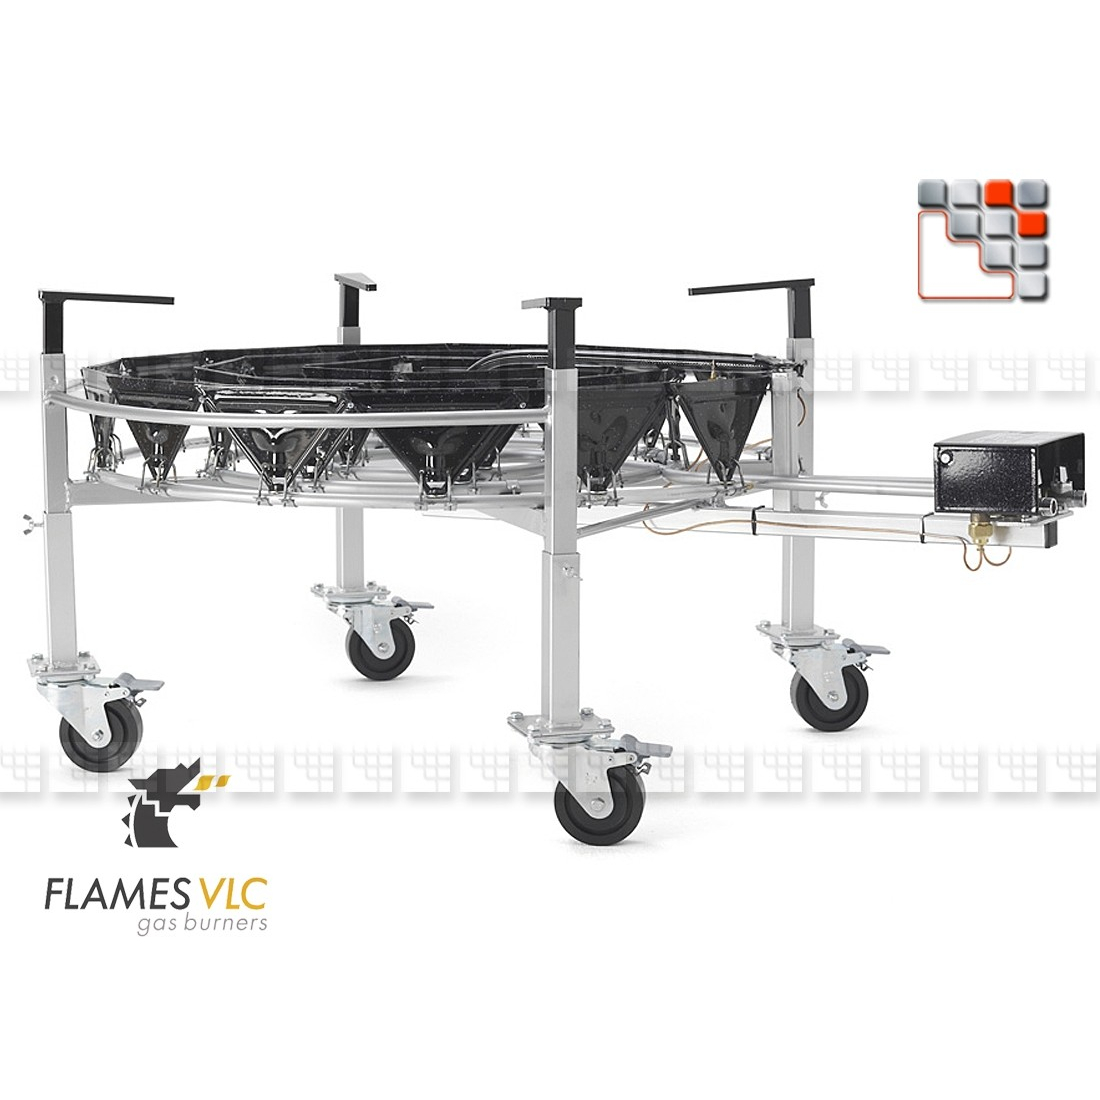 Kit 4 Pieds Reglables Roues Orientables VLC F08-BDKTRO900 FLAMES VLC® Bruleur Gaz Flames VLC